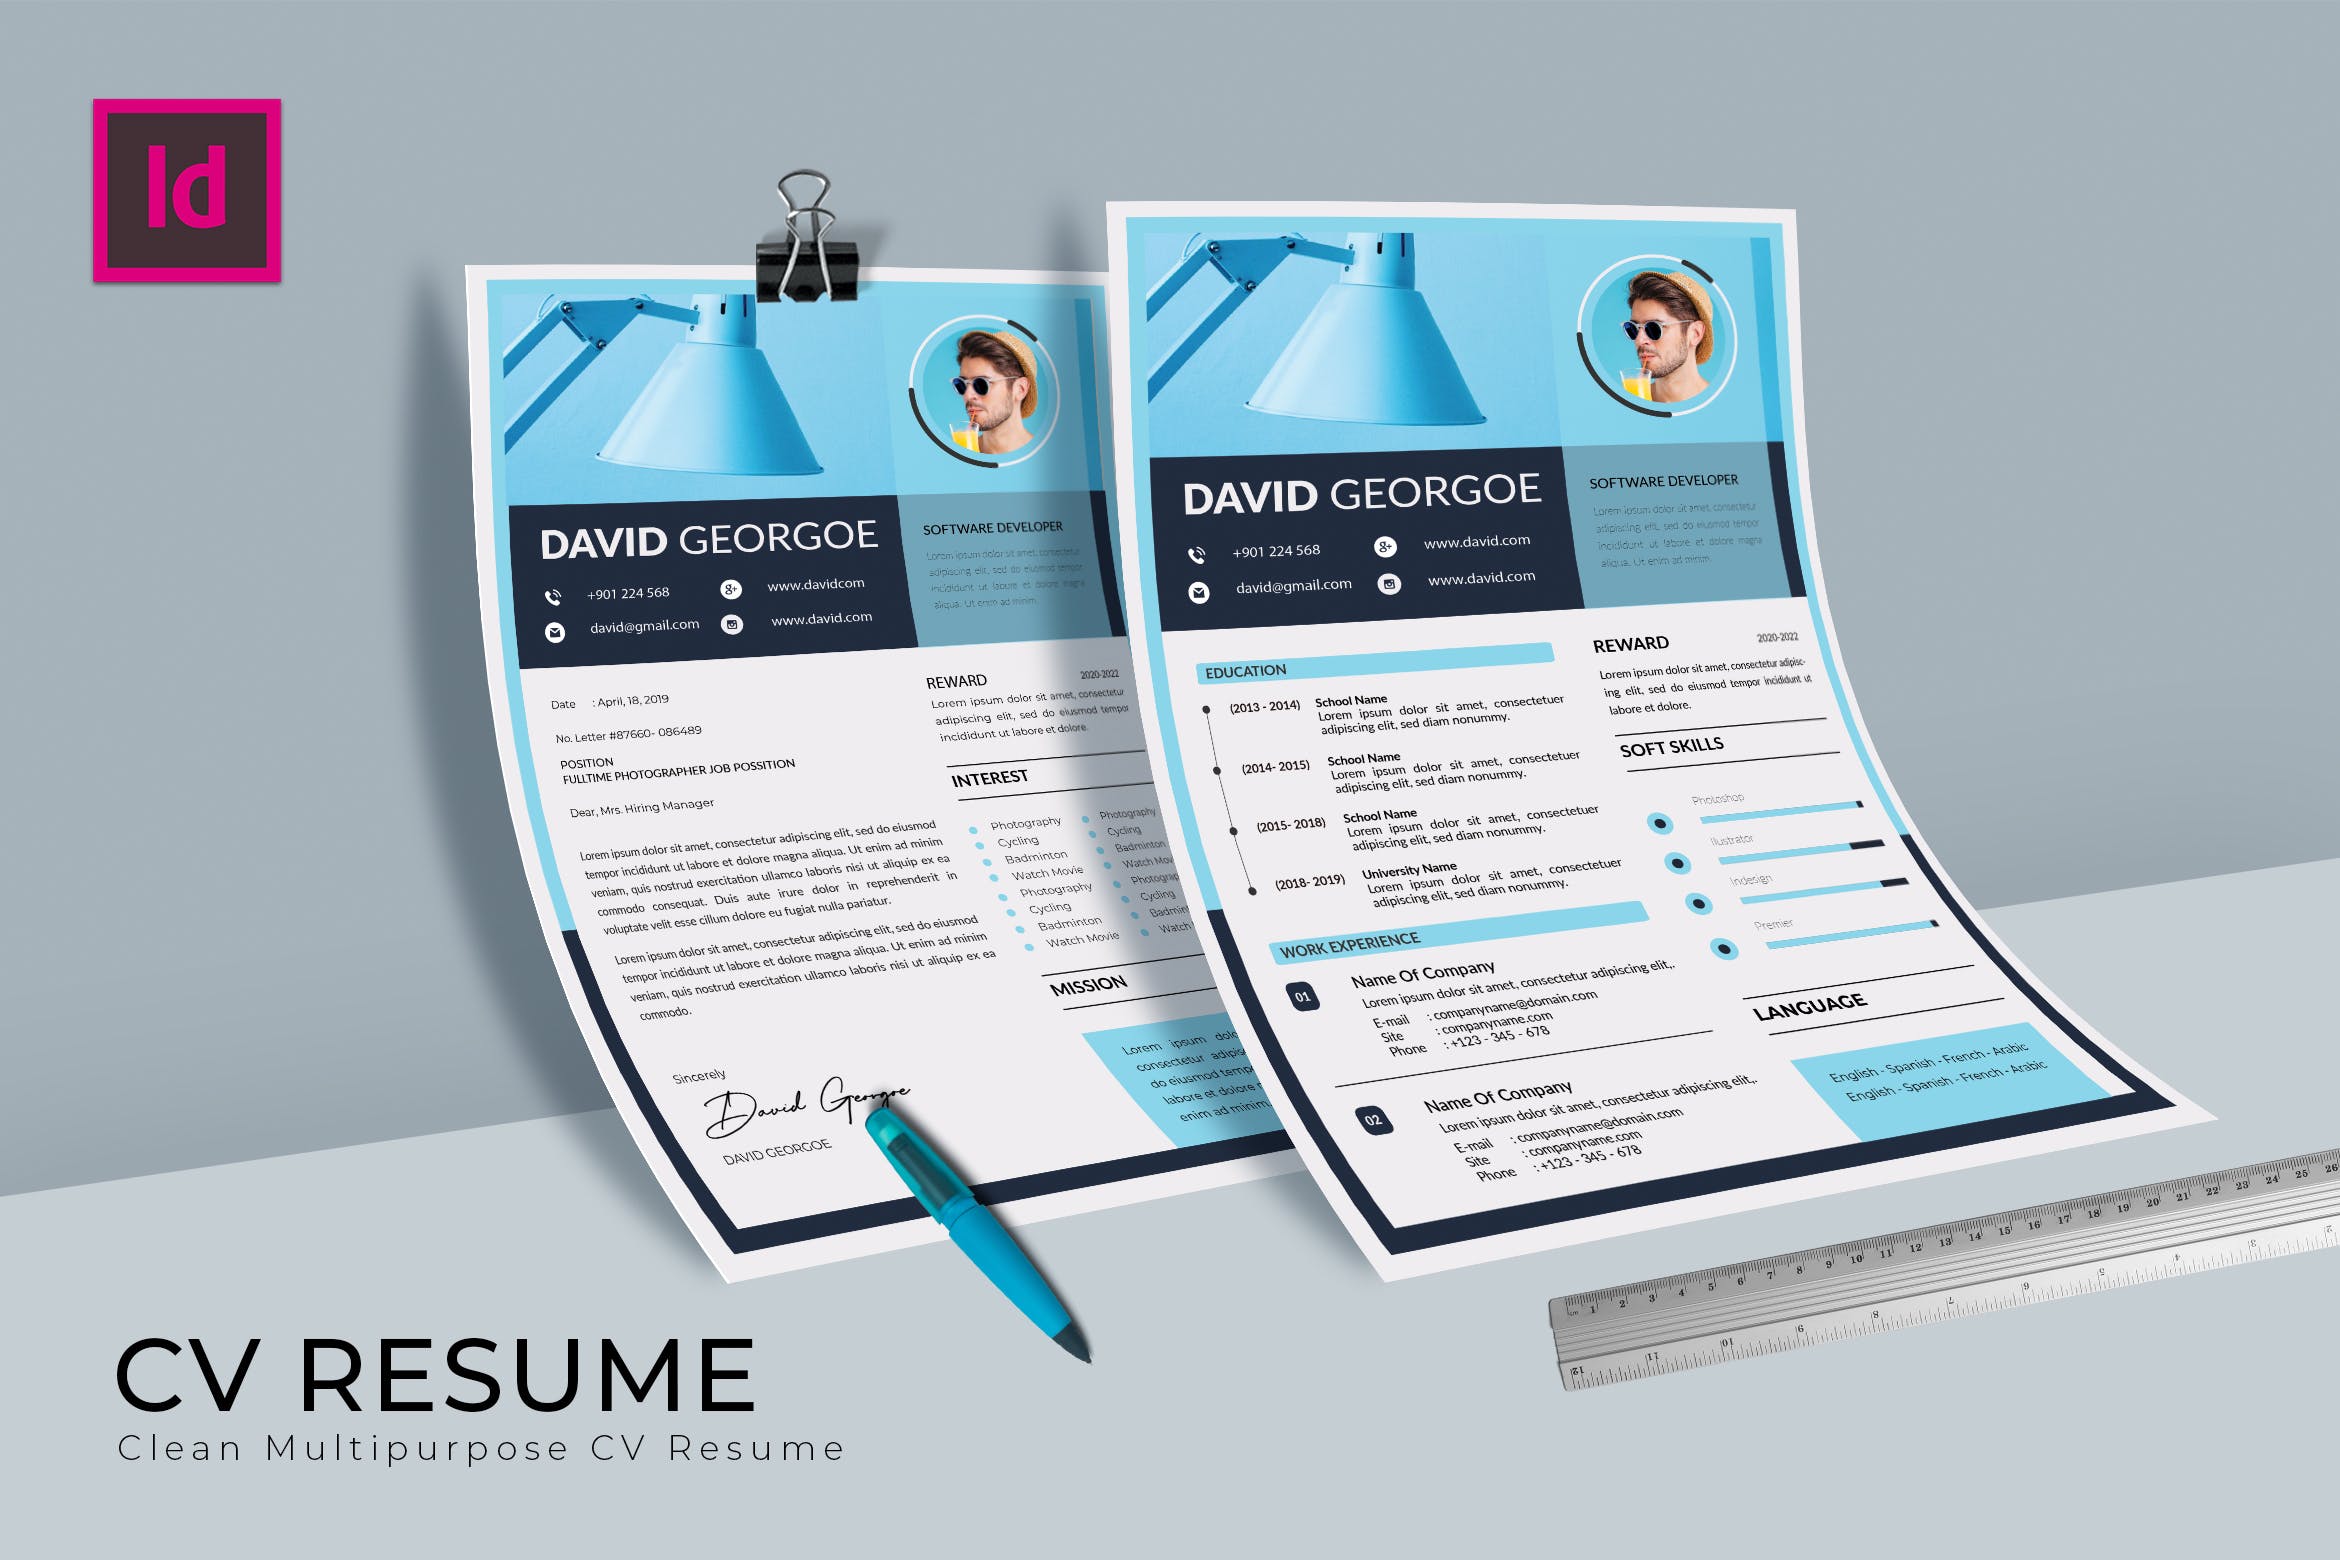 软件开发工程师介绍信&大洋岛精选简历模板 Softy Blue CV Resume Template插图